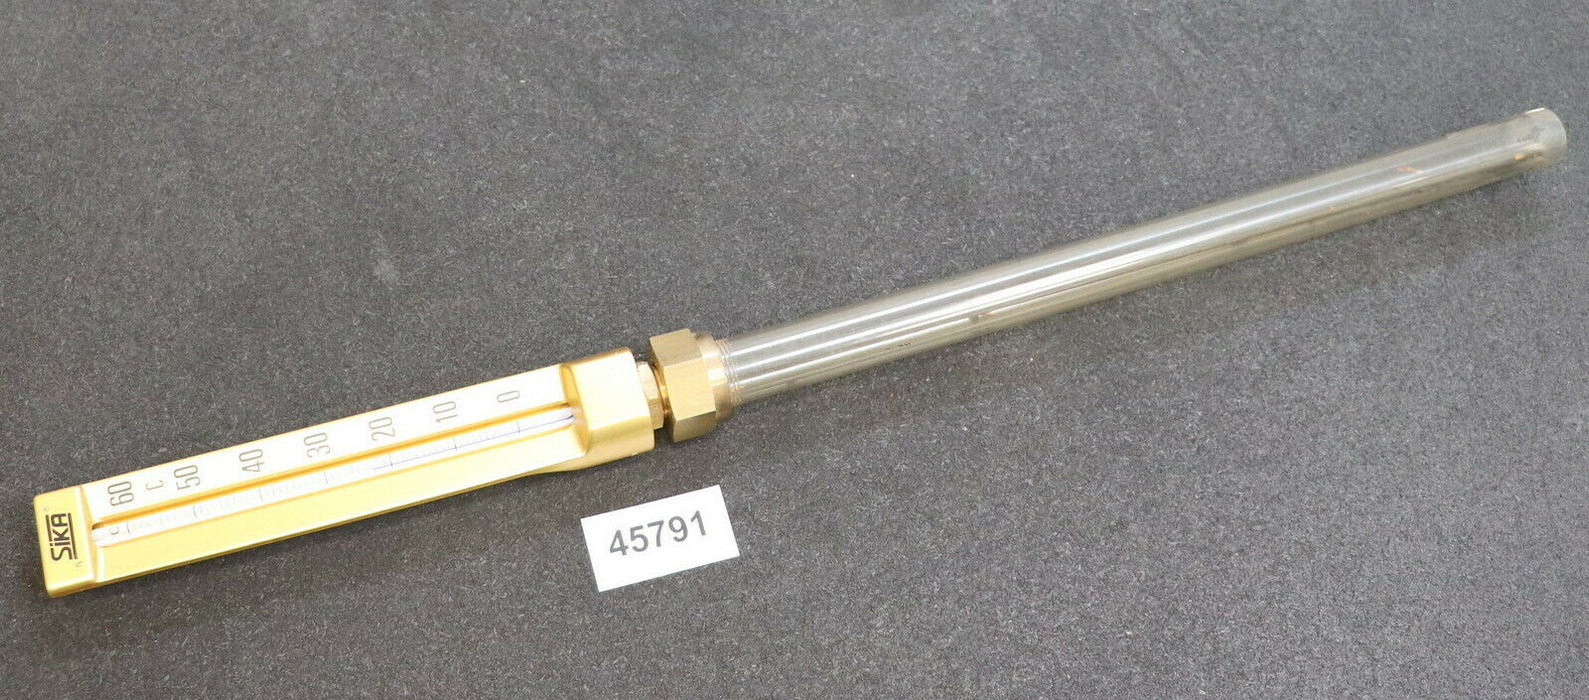 SIKA Einschraub-Thermometer 0-60°C - Messstablänge 350mm - für Gewinde 1/2"